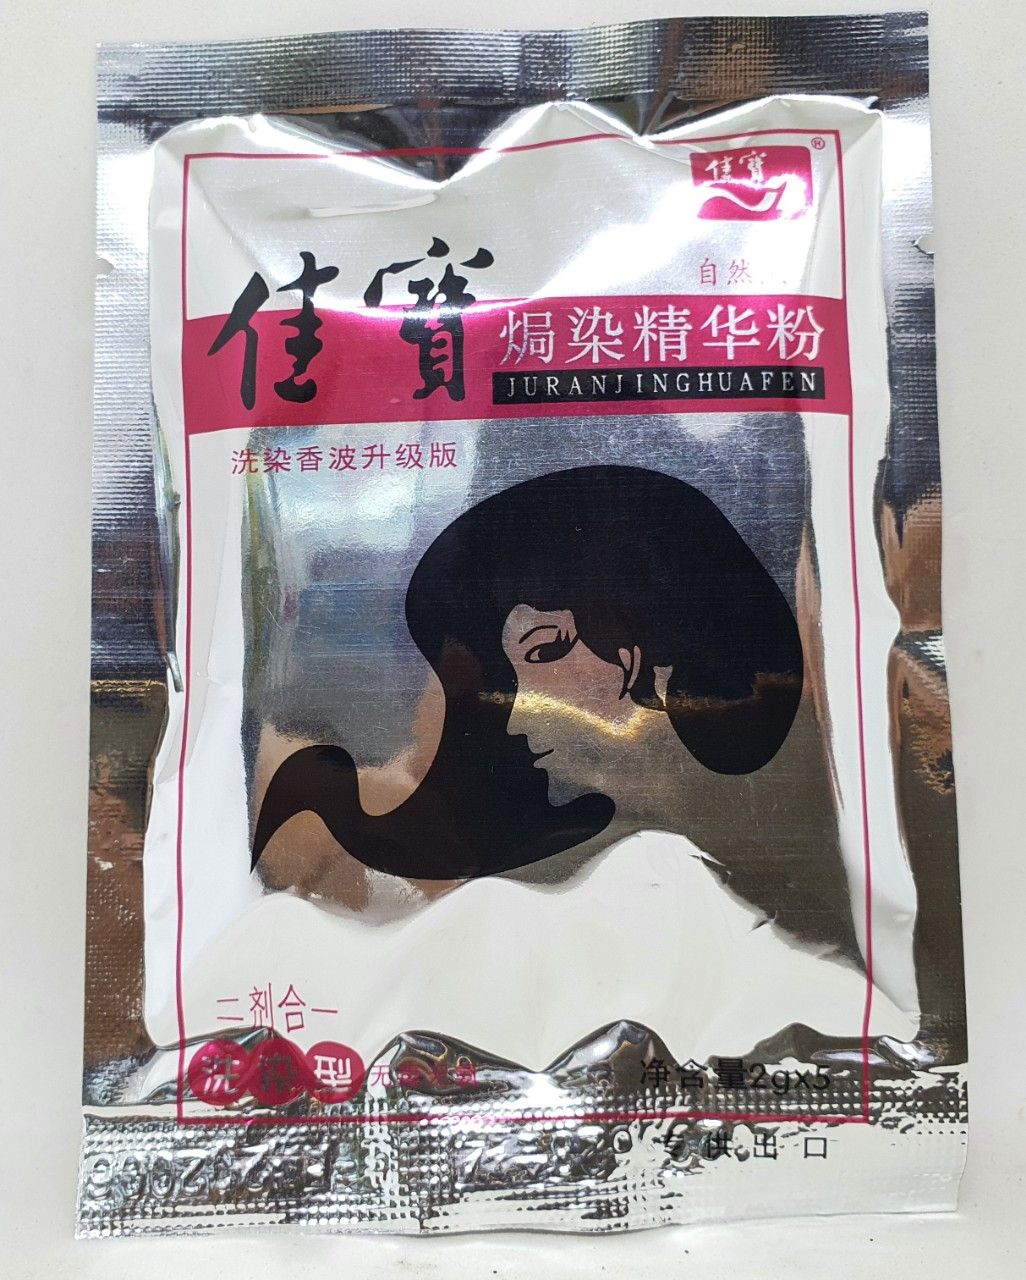  50 gói nhuộm tóc đen juranjinghuafen trung quốc 2 gam 